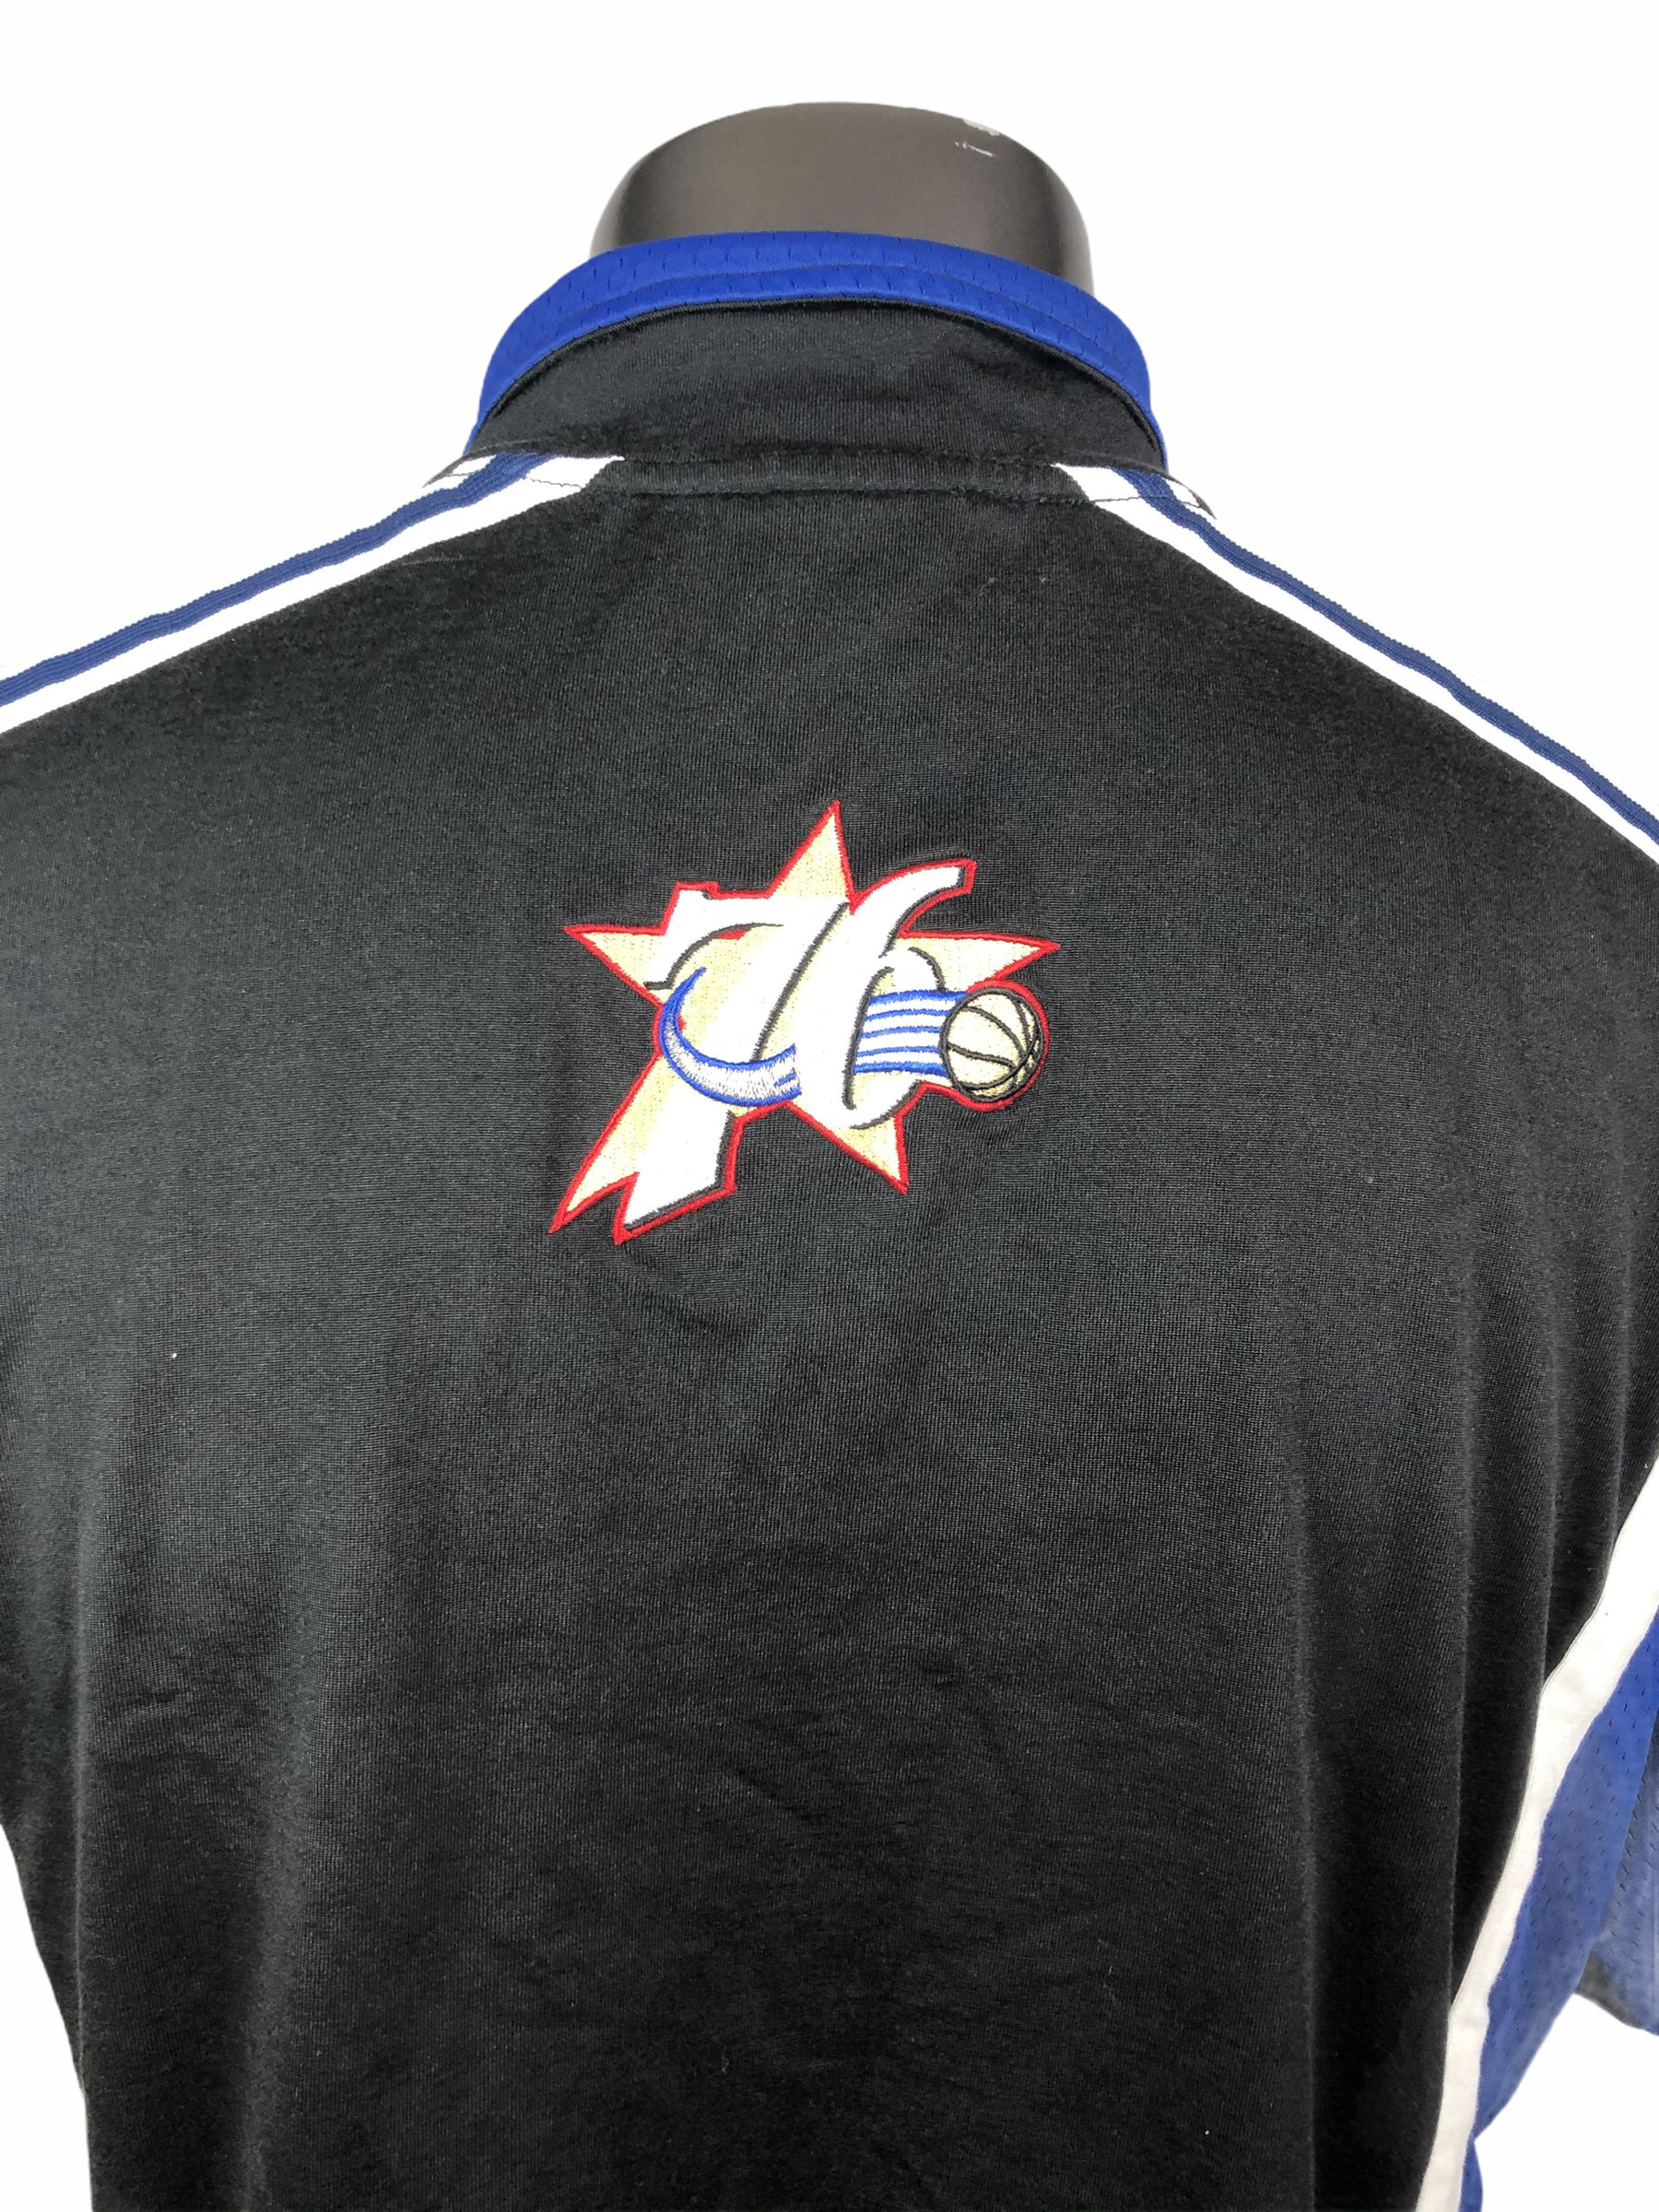 90's Philadelphia 76ers Sixers Champion NBA Warm-Up Jacket Size Large –  Rare VNTG